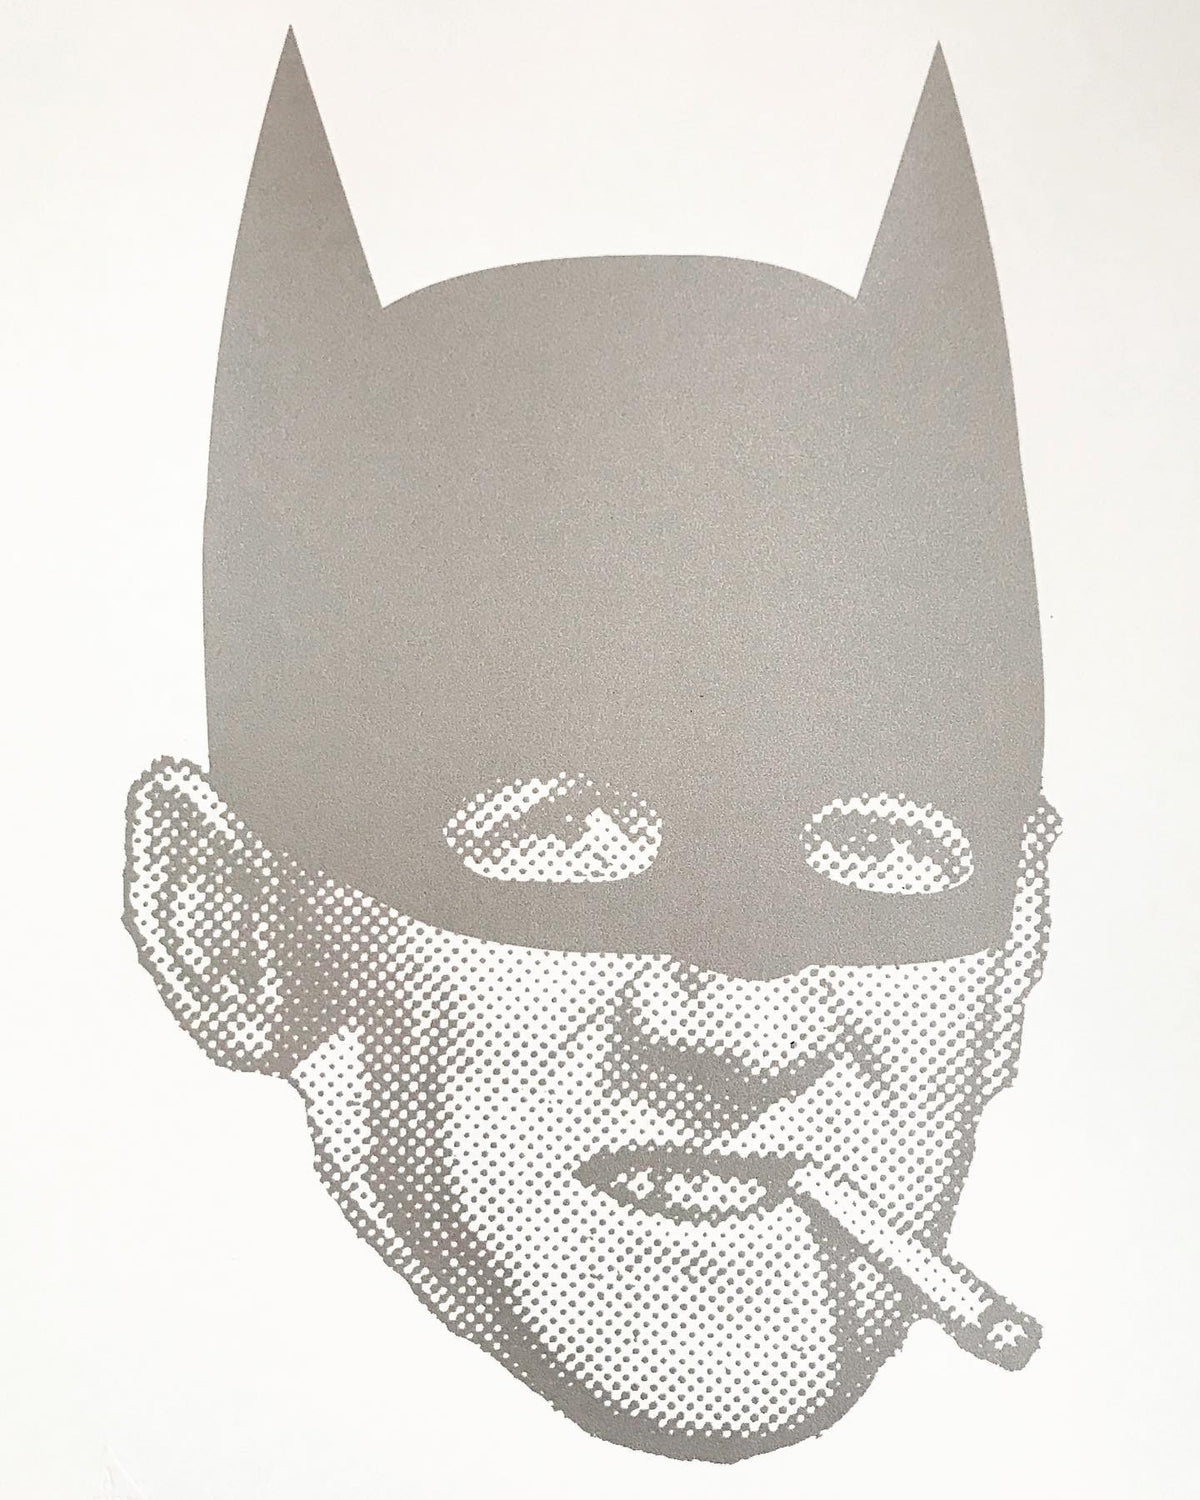 Batsmoker by Mister Edwards